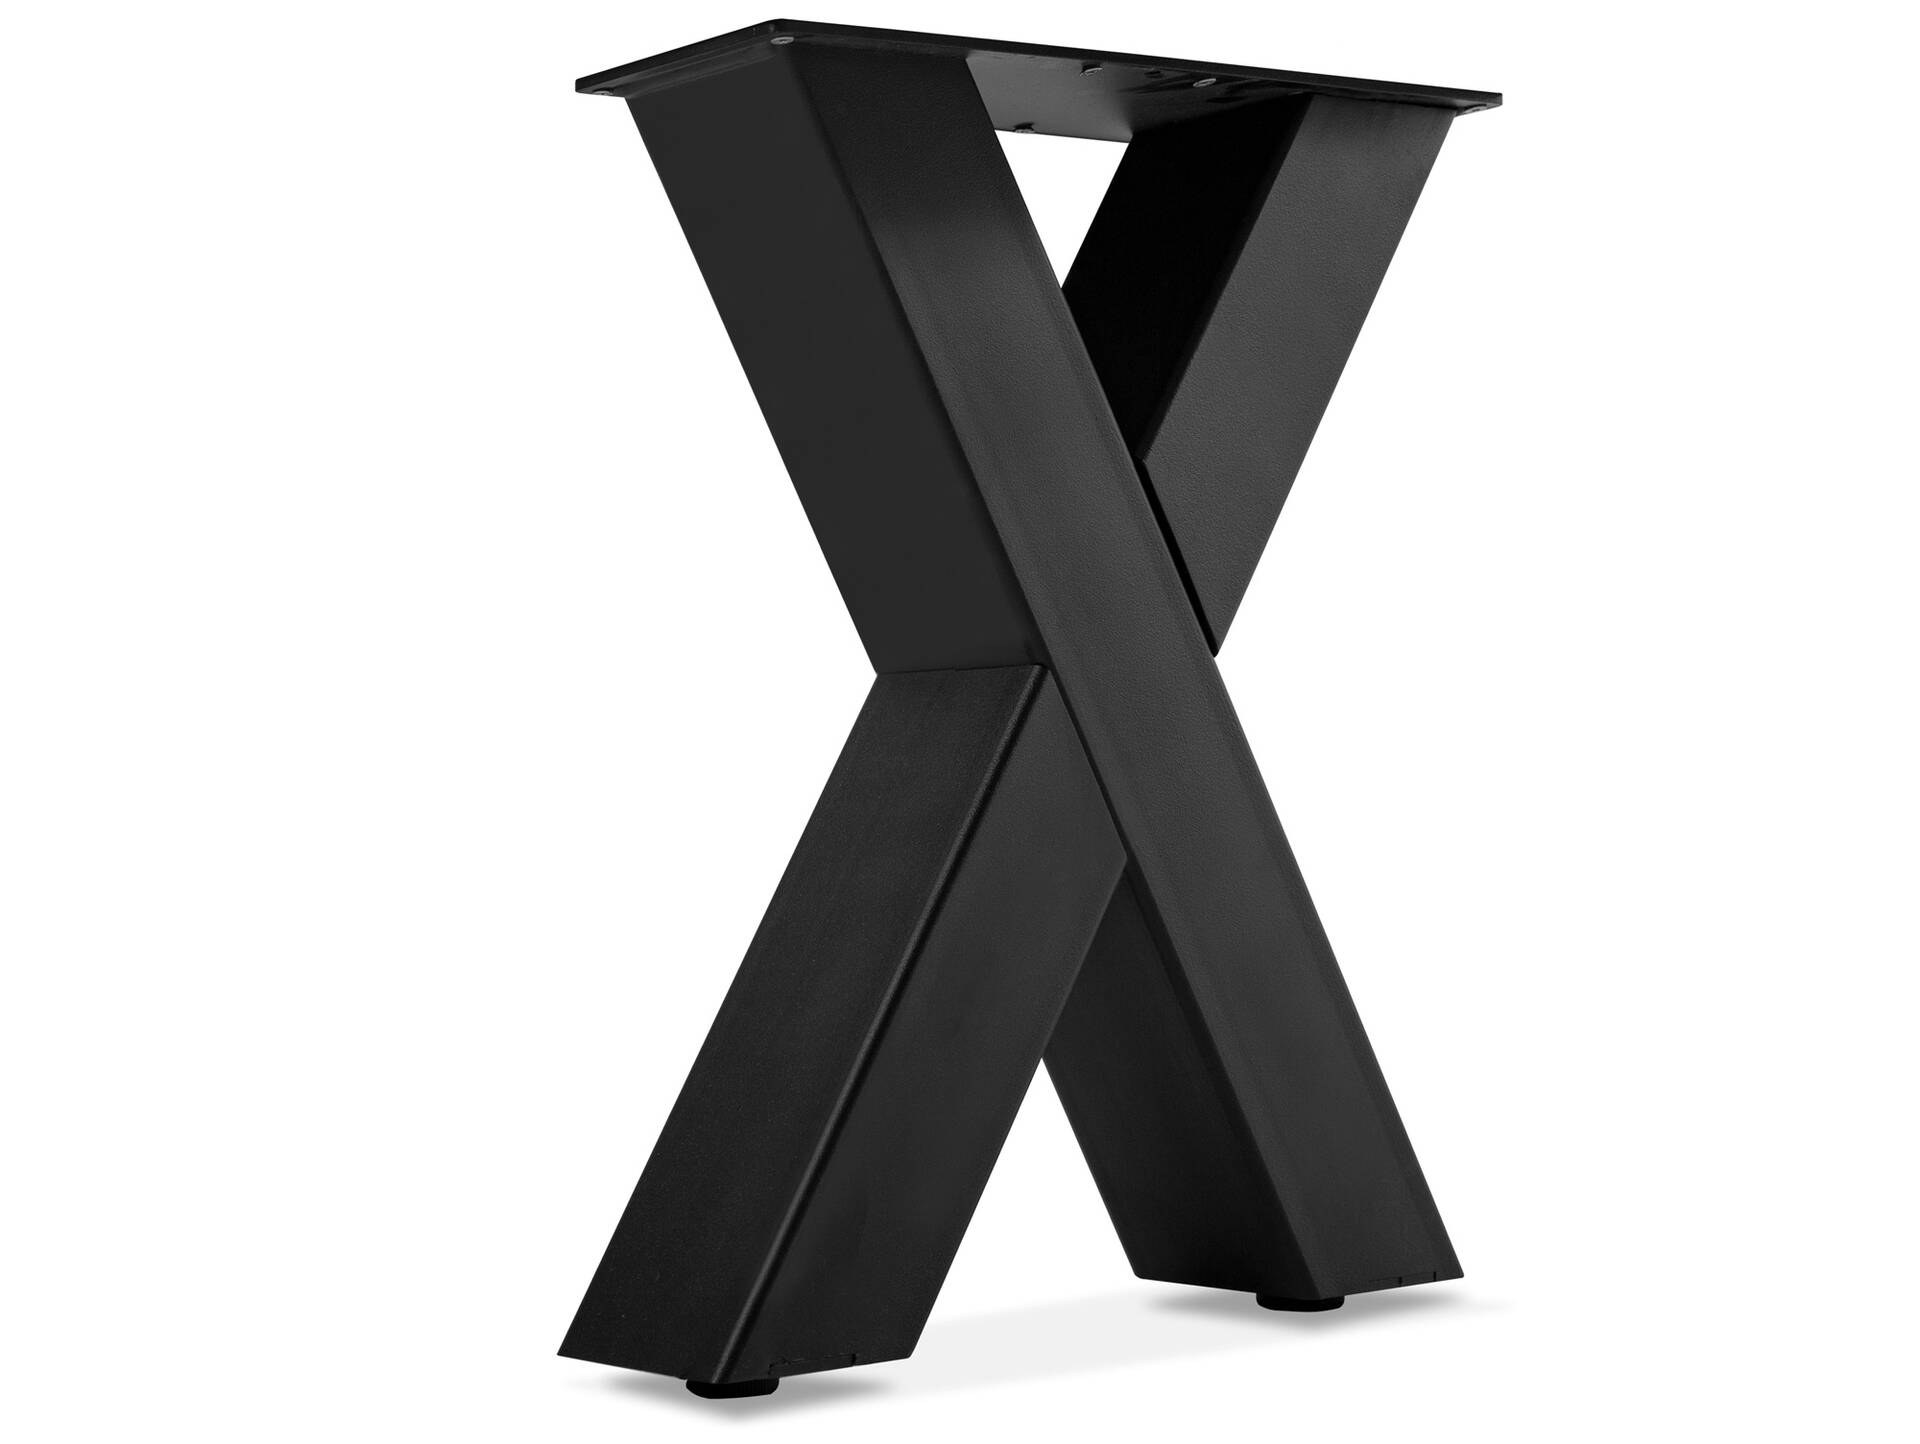 1 PAAR X-Beine für Bank, 46x40 cm, Material Stahl, schwarz 